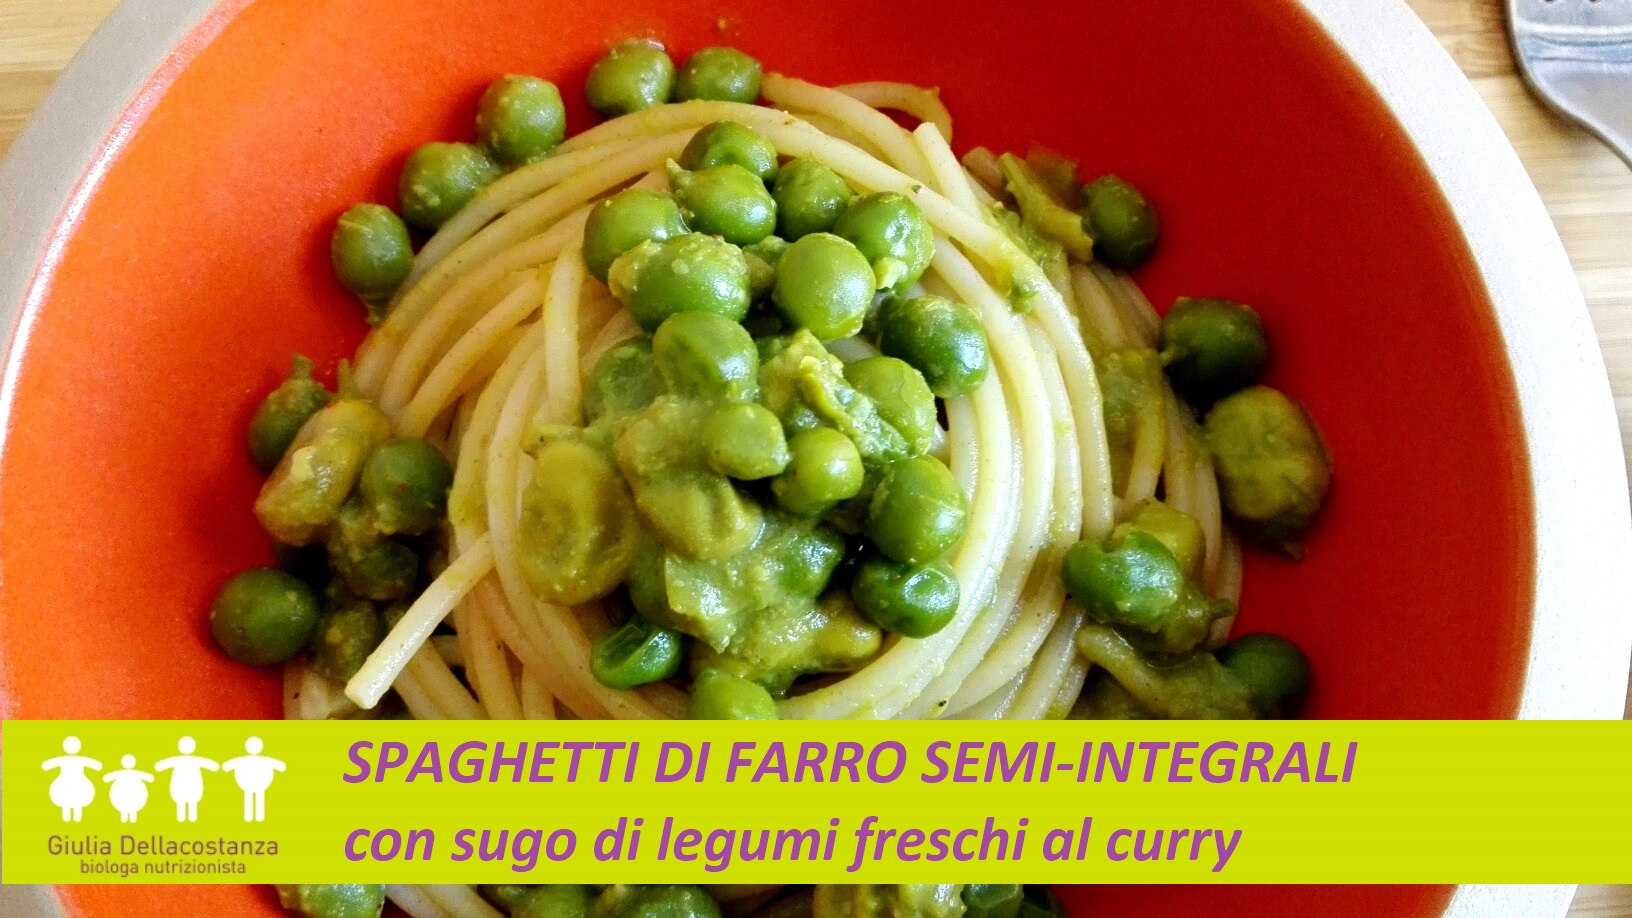 Piatto di pasta: spaghetti di farro conditi con sugo di legumi freschi al curry.